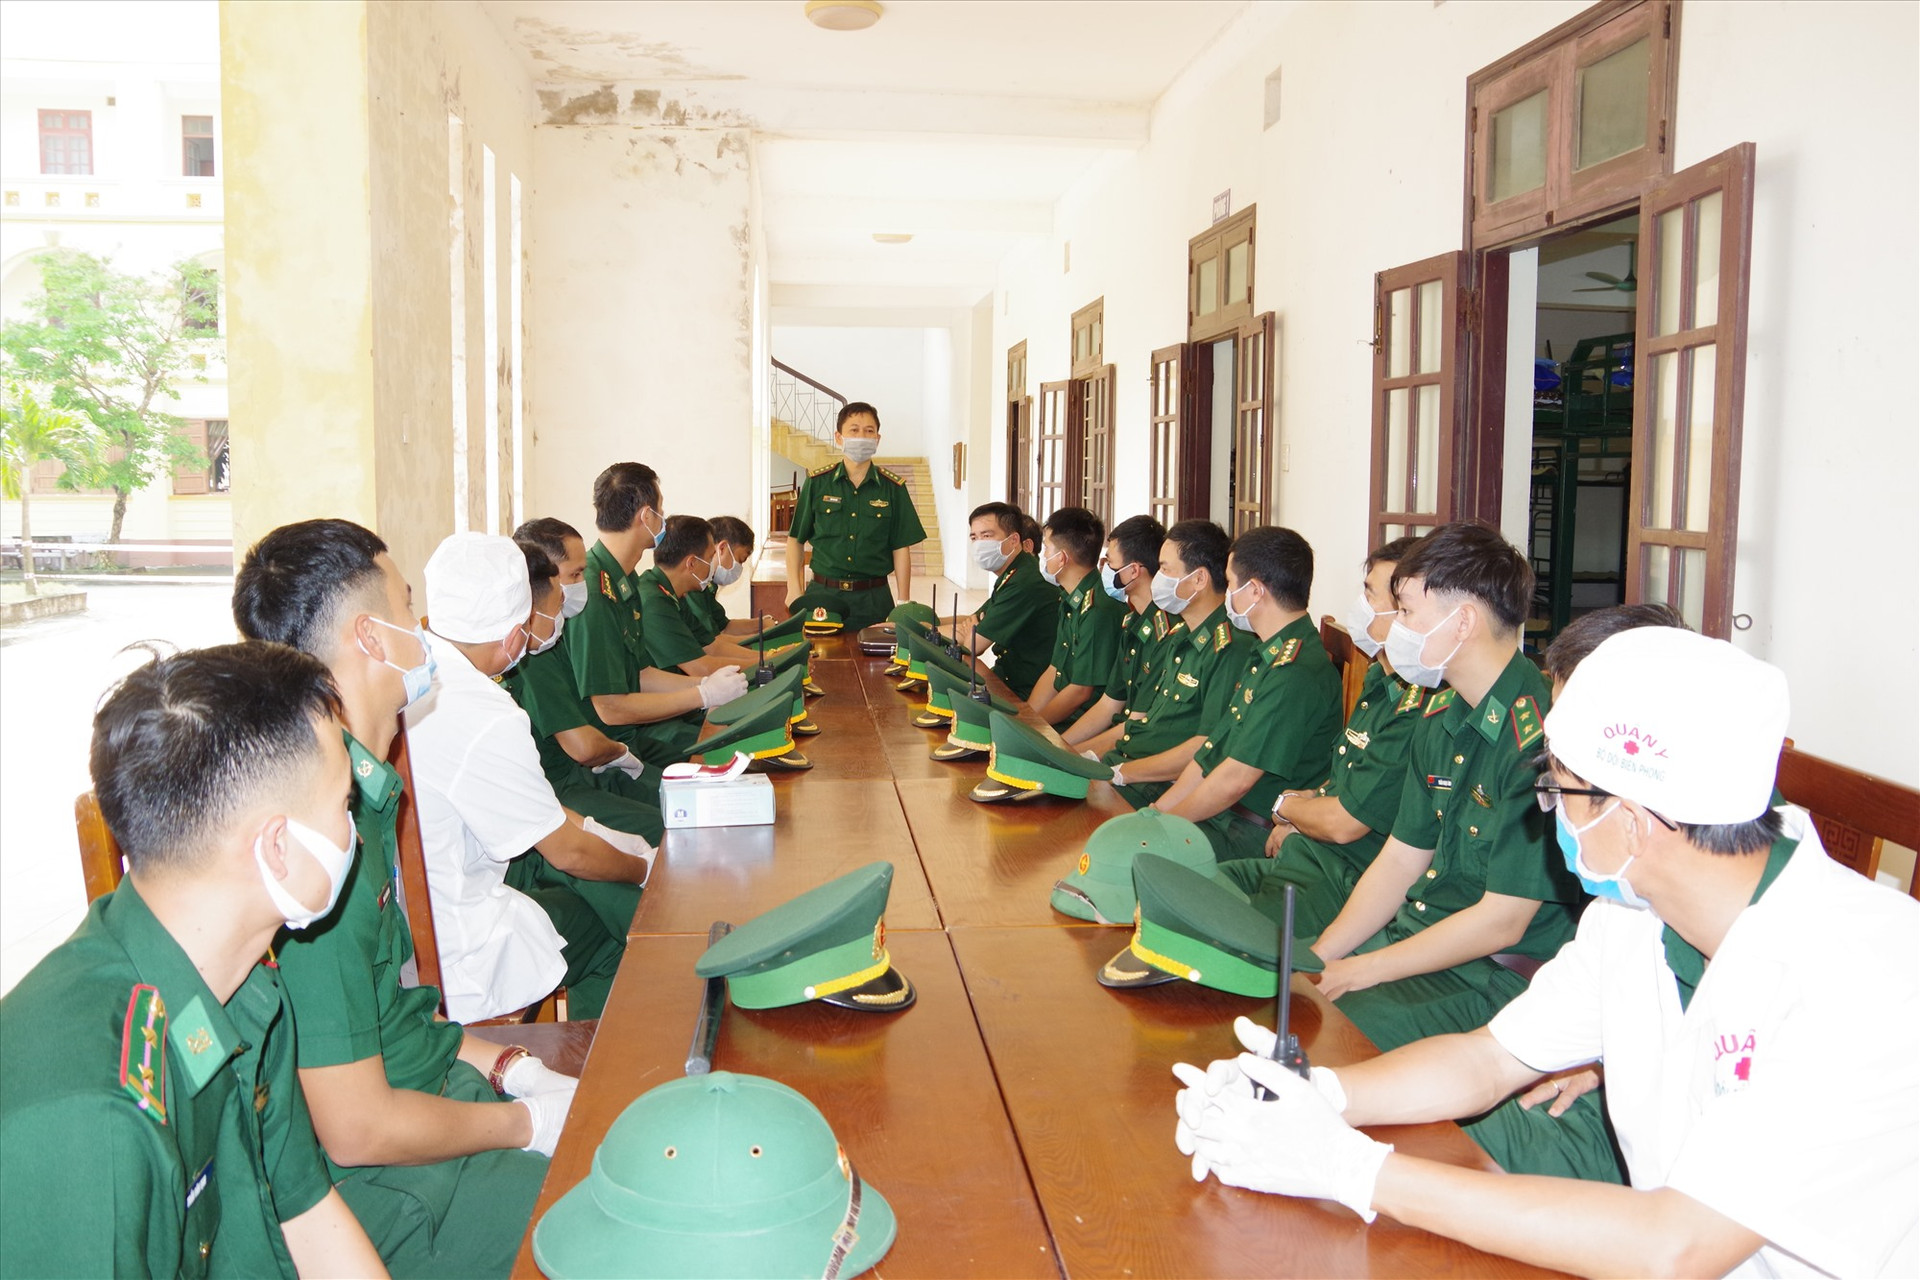 Thượng tá Trần Tiến Hiền – Phó Chỉ huy trưởng BĐBP tỉnh Quảng Nam giao nhiệm vụ cho CBCS phục vụ trong khu vực cách ly.